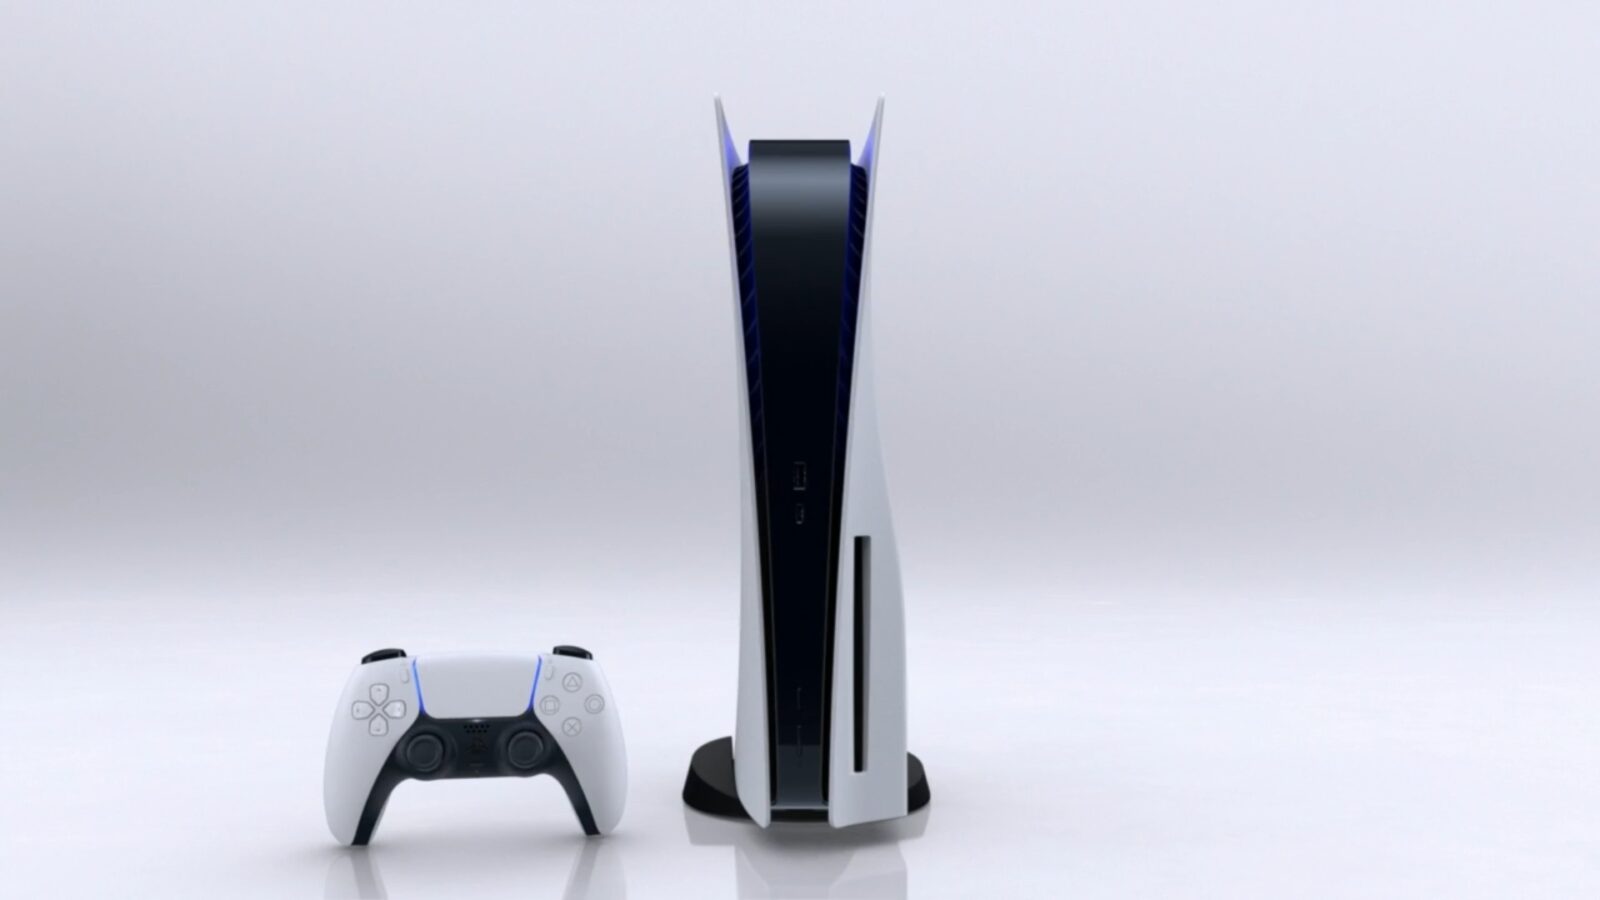 Il CEO di Sony PlayStation è sconvolto per vedere le unità PS5 acquistate dai rivenditori